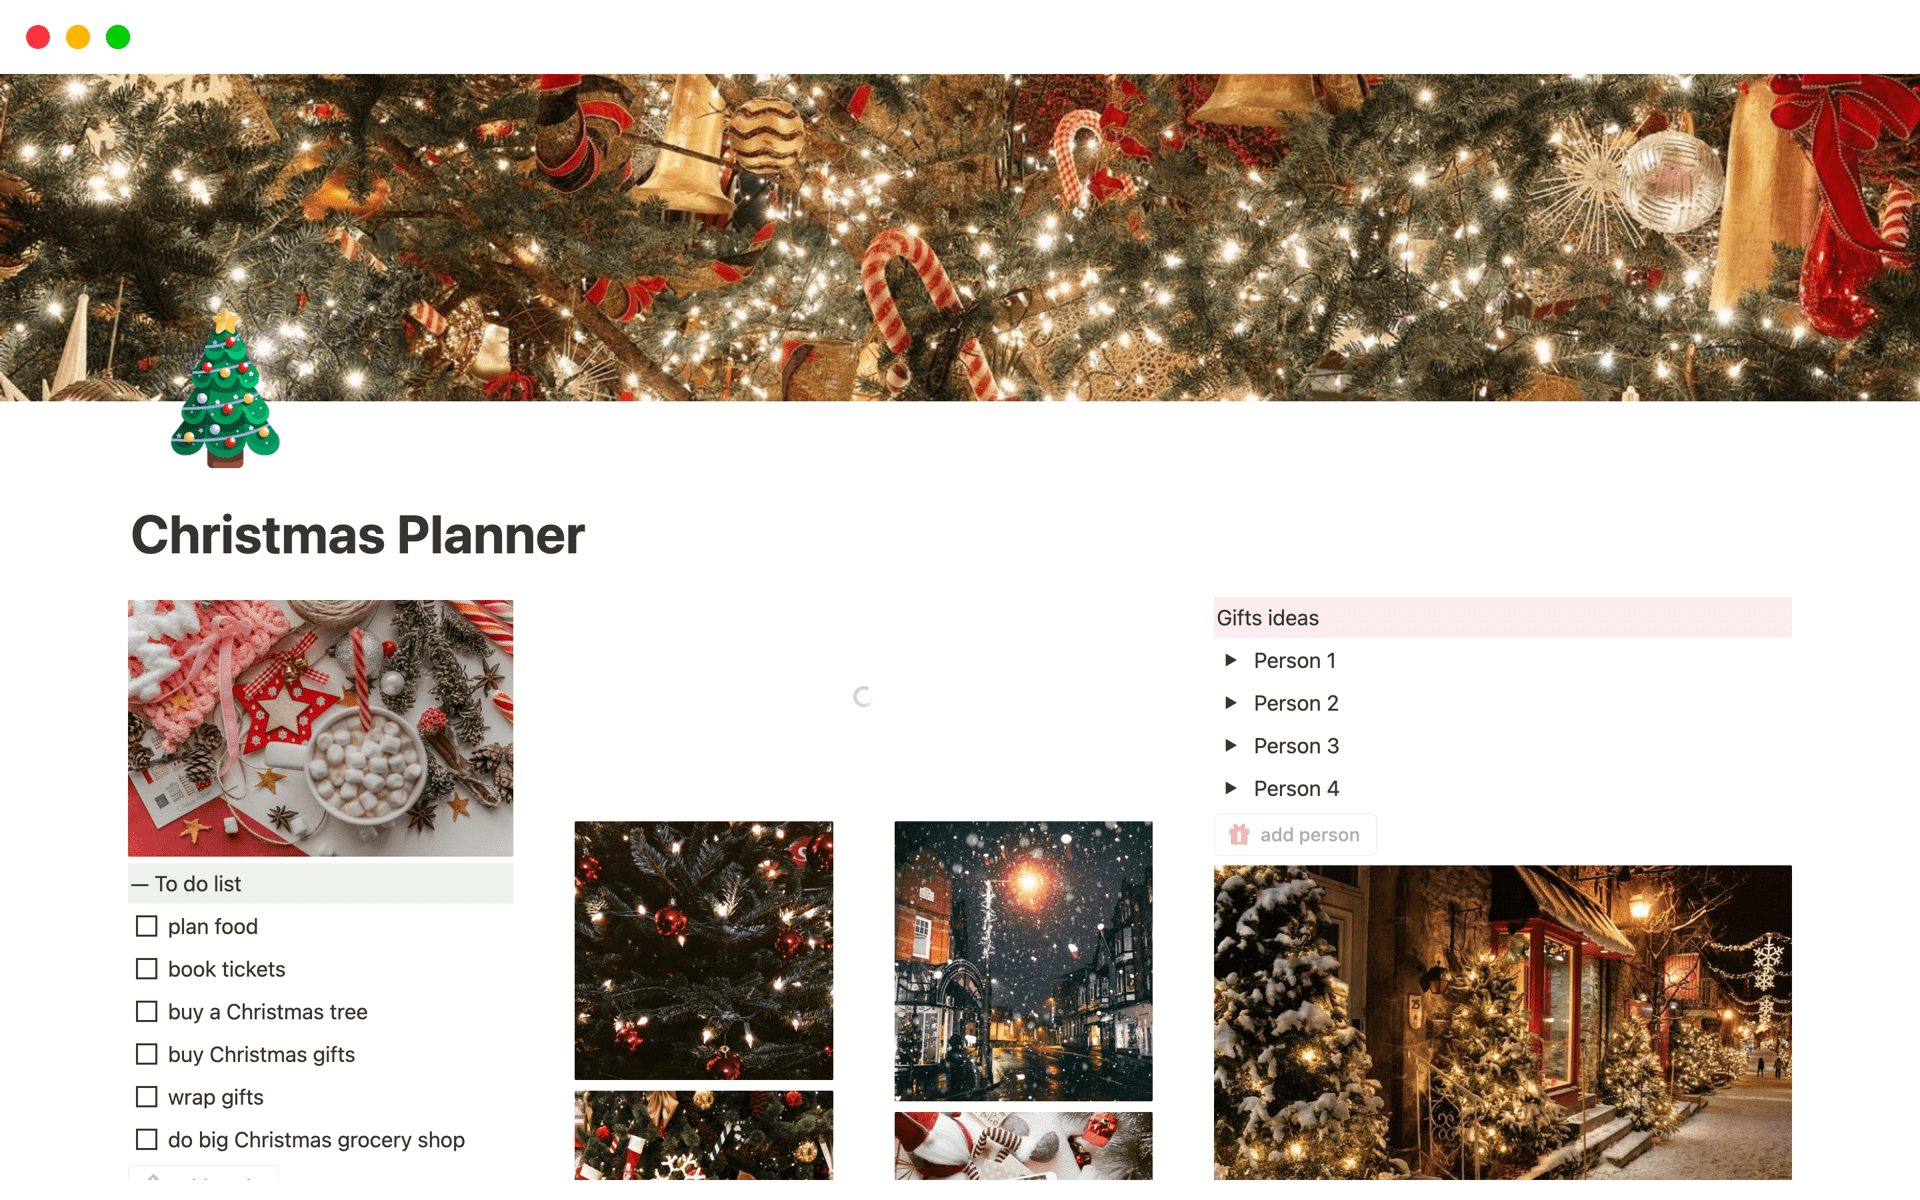 Uma prévia do modelo para Christmas Planner